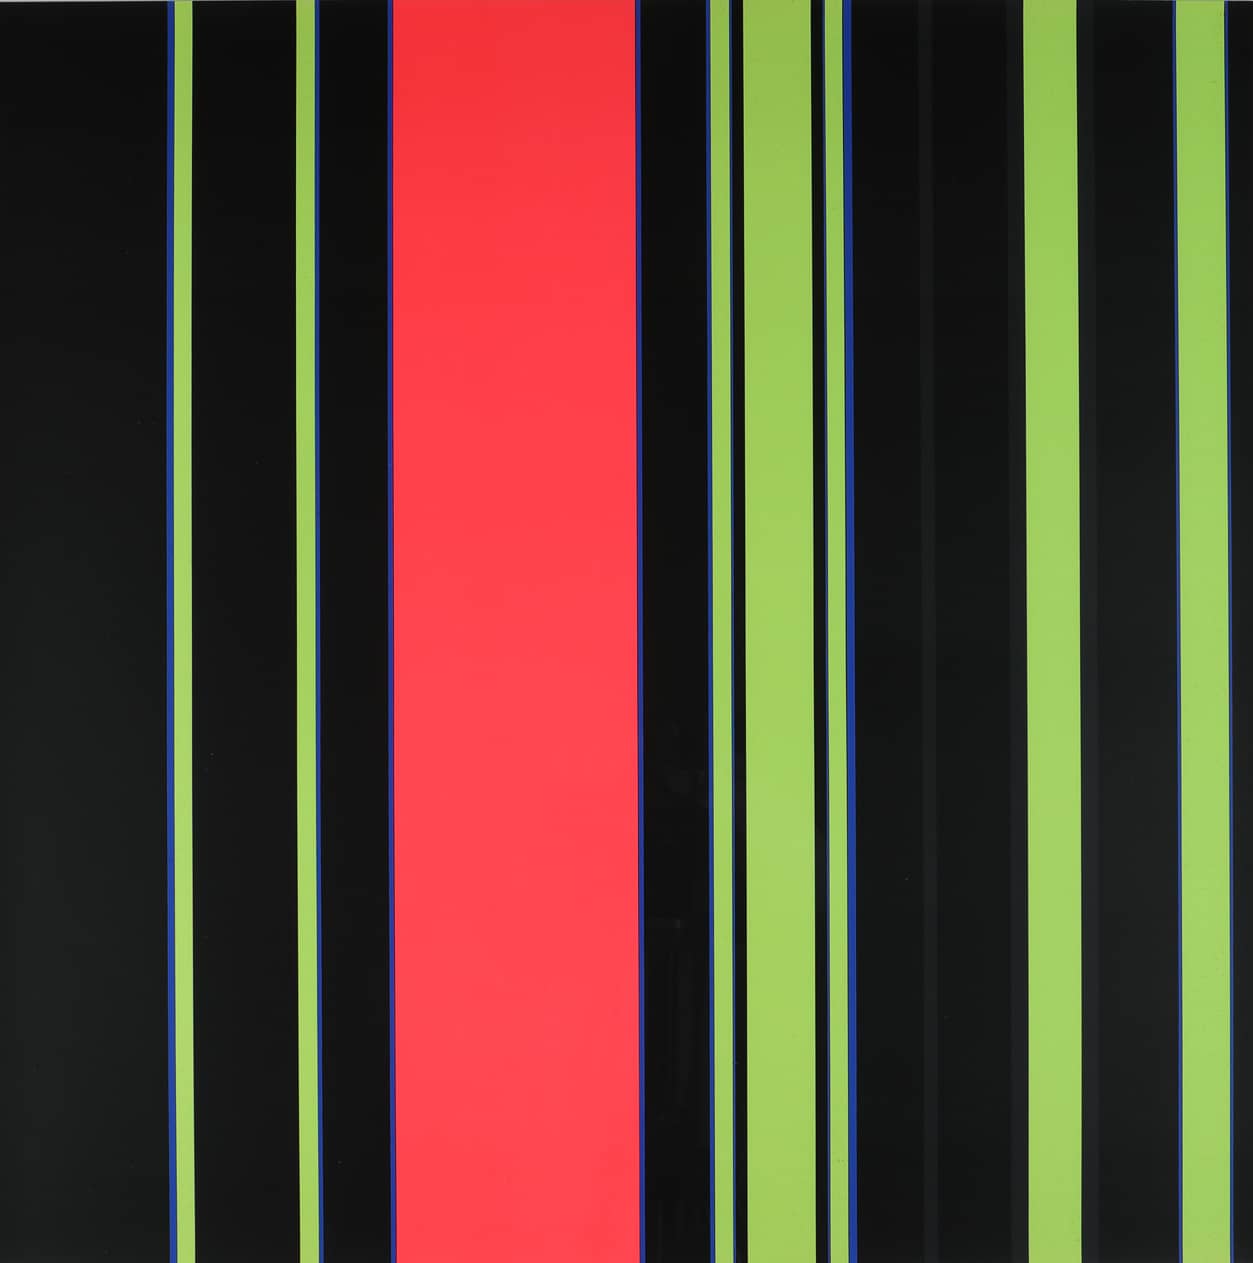 Günter Fruhtrunk, Exzentrische Mitte aus Neuer Dreiklang, 1971, Farbserigraphie, 69,8 x 69,5 cm, KDK, (c) VG Bild-Kunst